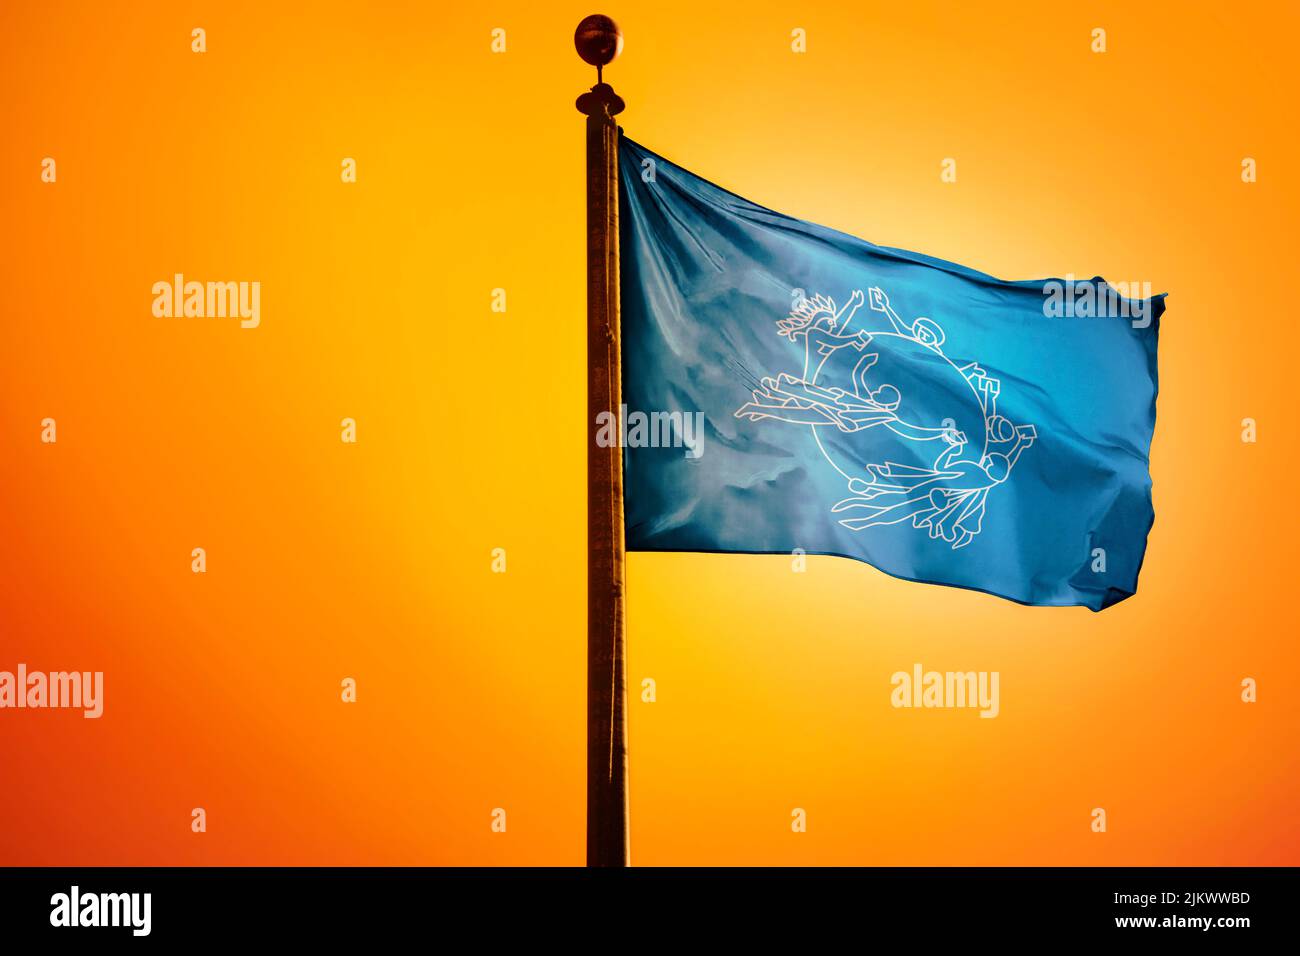 Un'illustrazione digitale della bandiera dell'Unione postale universale che sventola contro un cielo giallo brillante Foto Stock